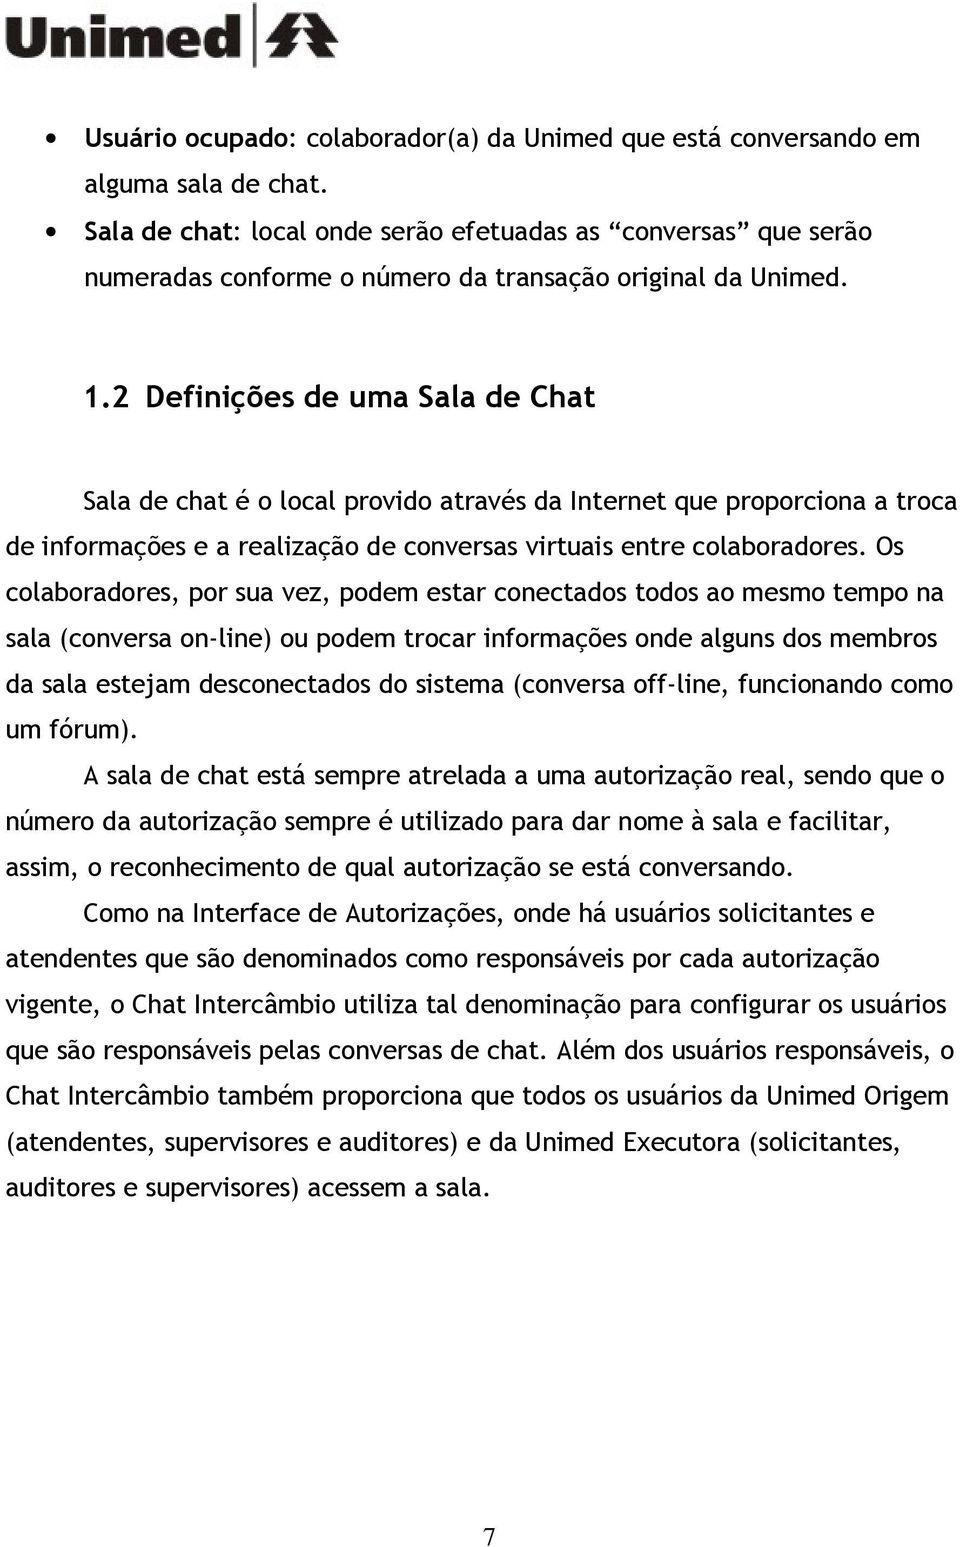 2 Definições de uma Sala de Chat Sala de chat é o local provido através da Internet que proporciona a troca de informações e a realização de conversas virtuais entre colaboradores.